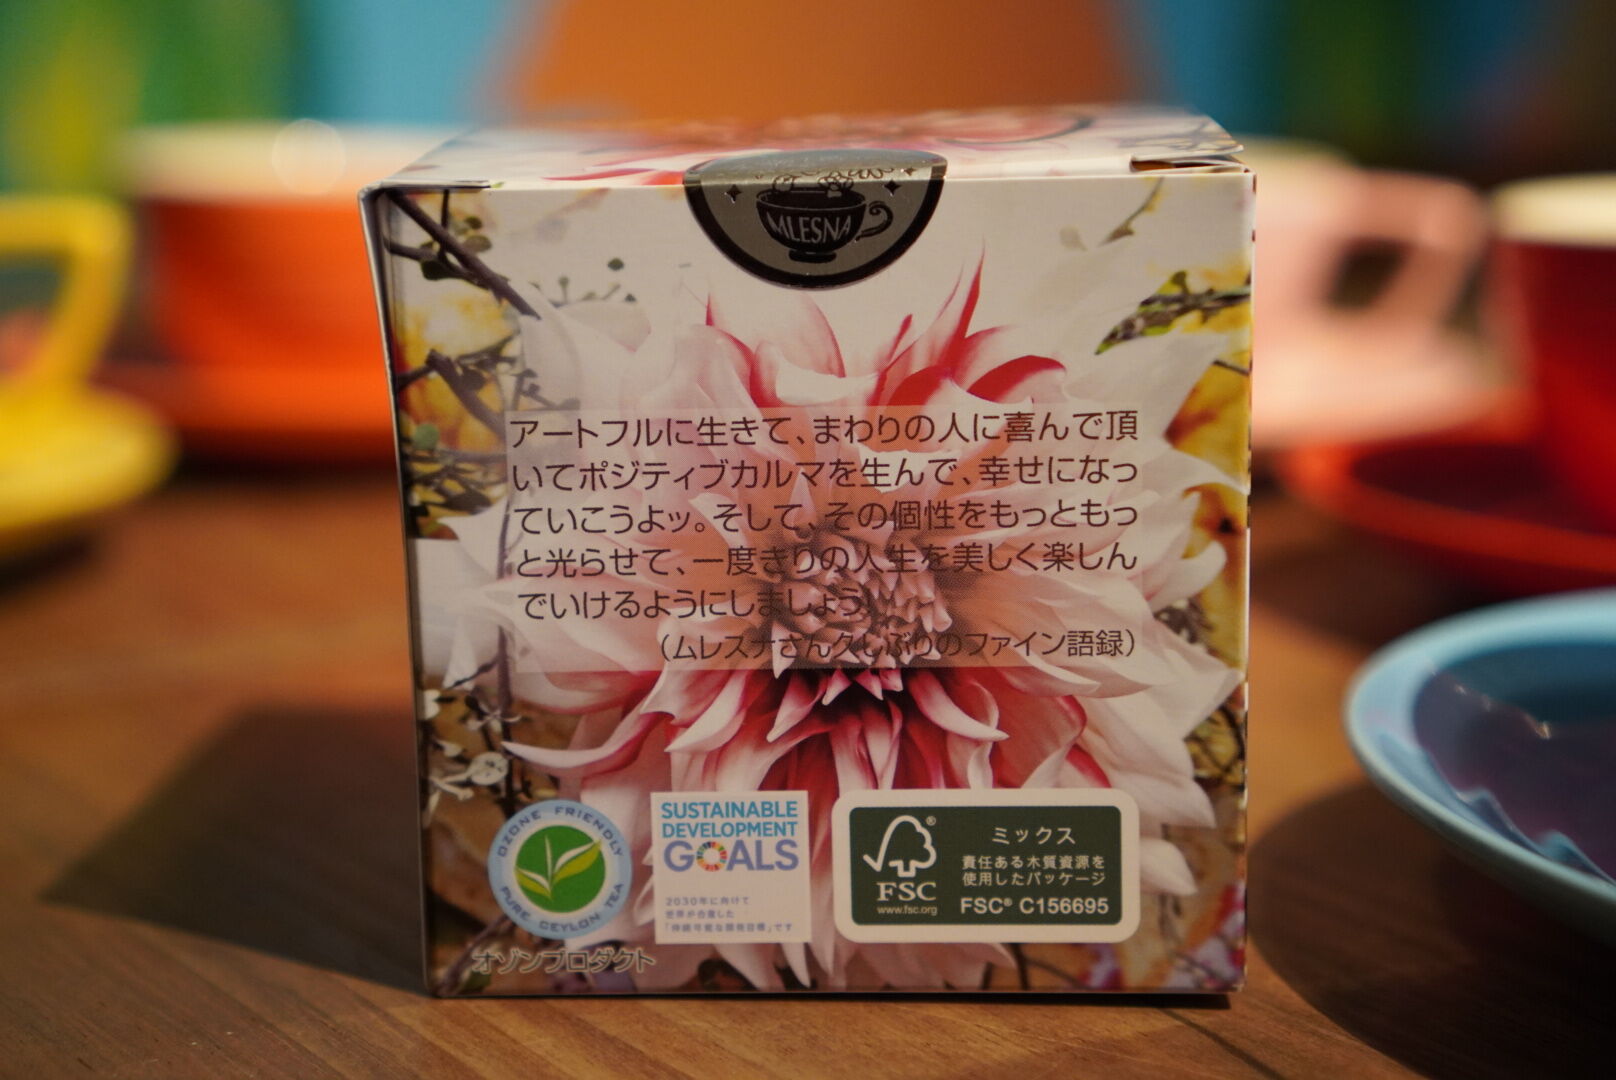 紅茶 ムレスナティー 京都祇園の香り お京都でお茶しましょう･･･のおいしい紅茶